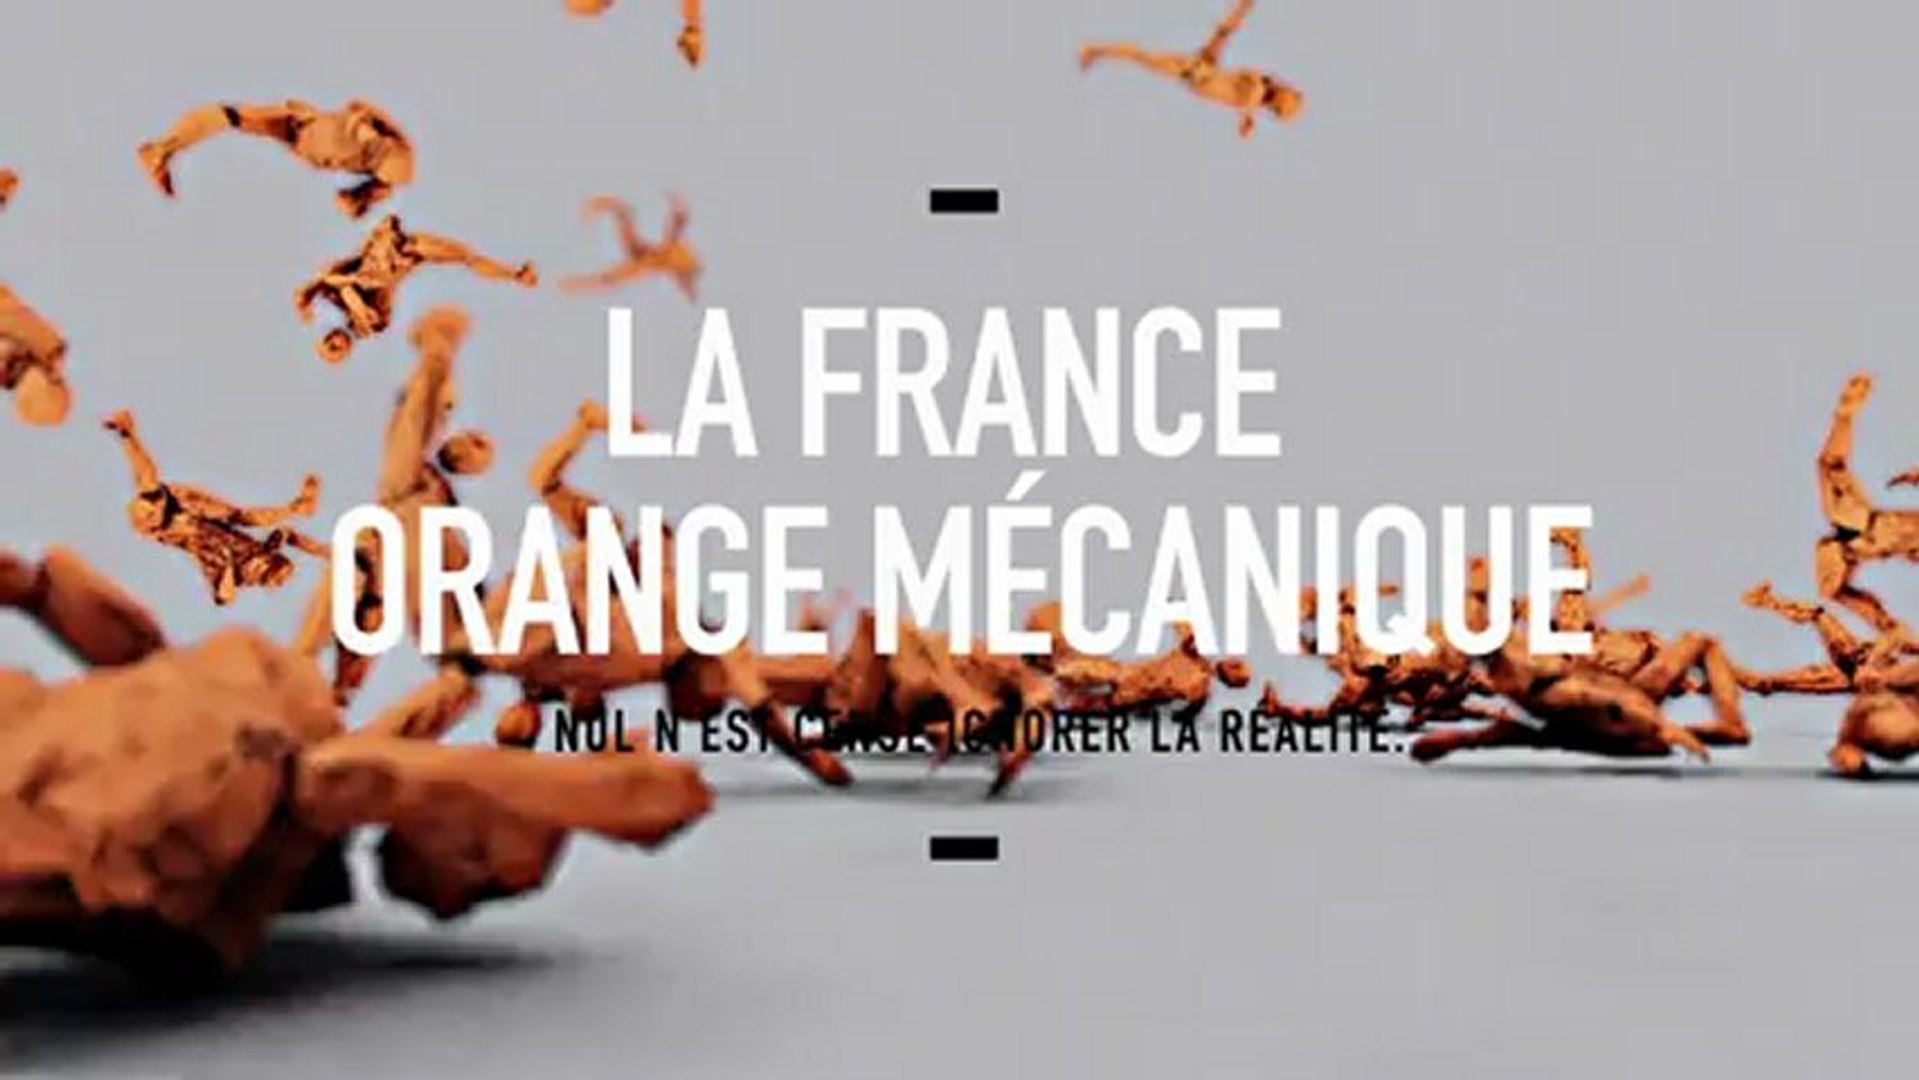 TRAILER OFFICIEL LA FRANCE ORANGE MÉCANIQUE (Laurent Obertone) document à  paraître le 17 janvier - Vidéo Dailymotion